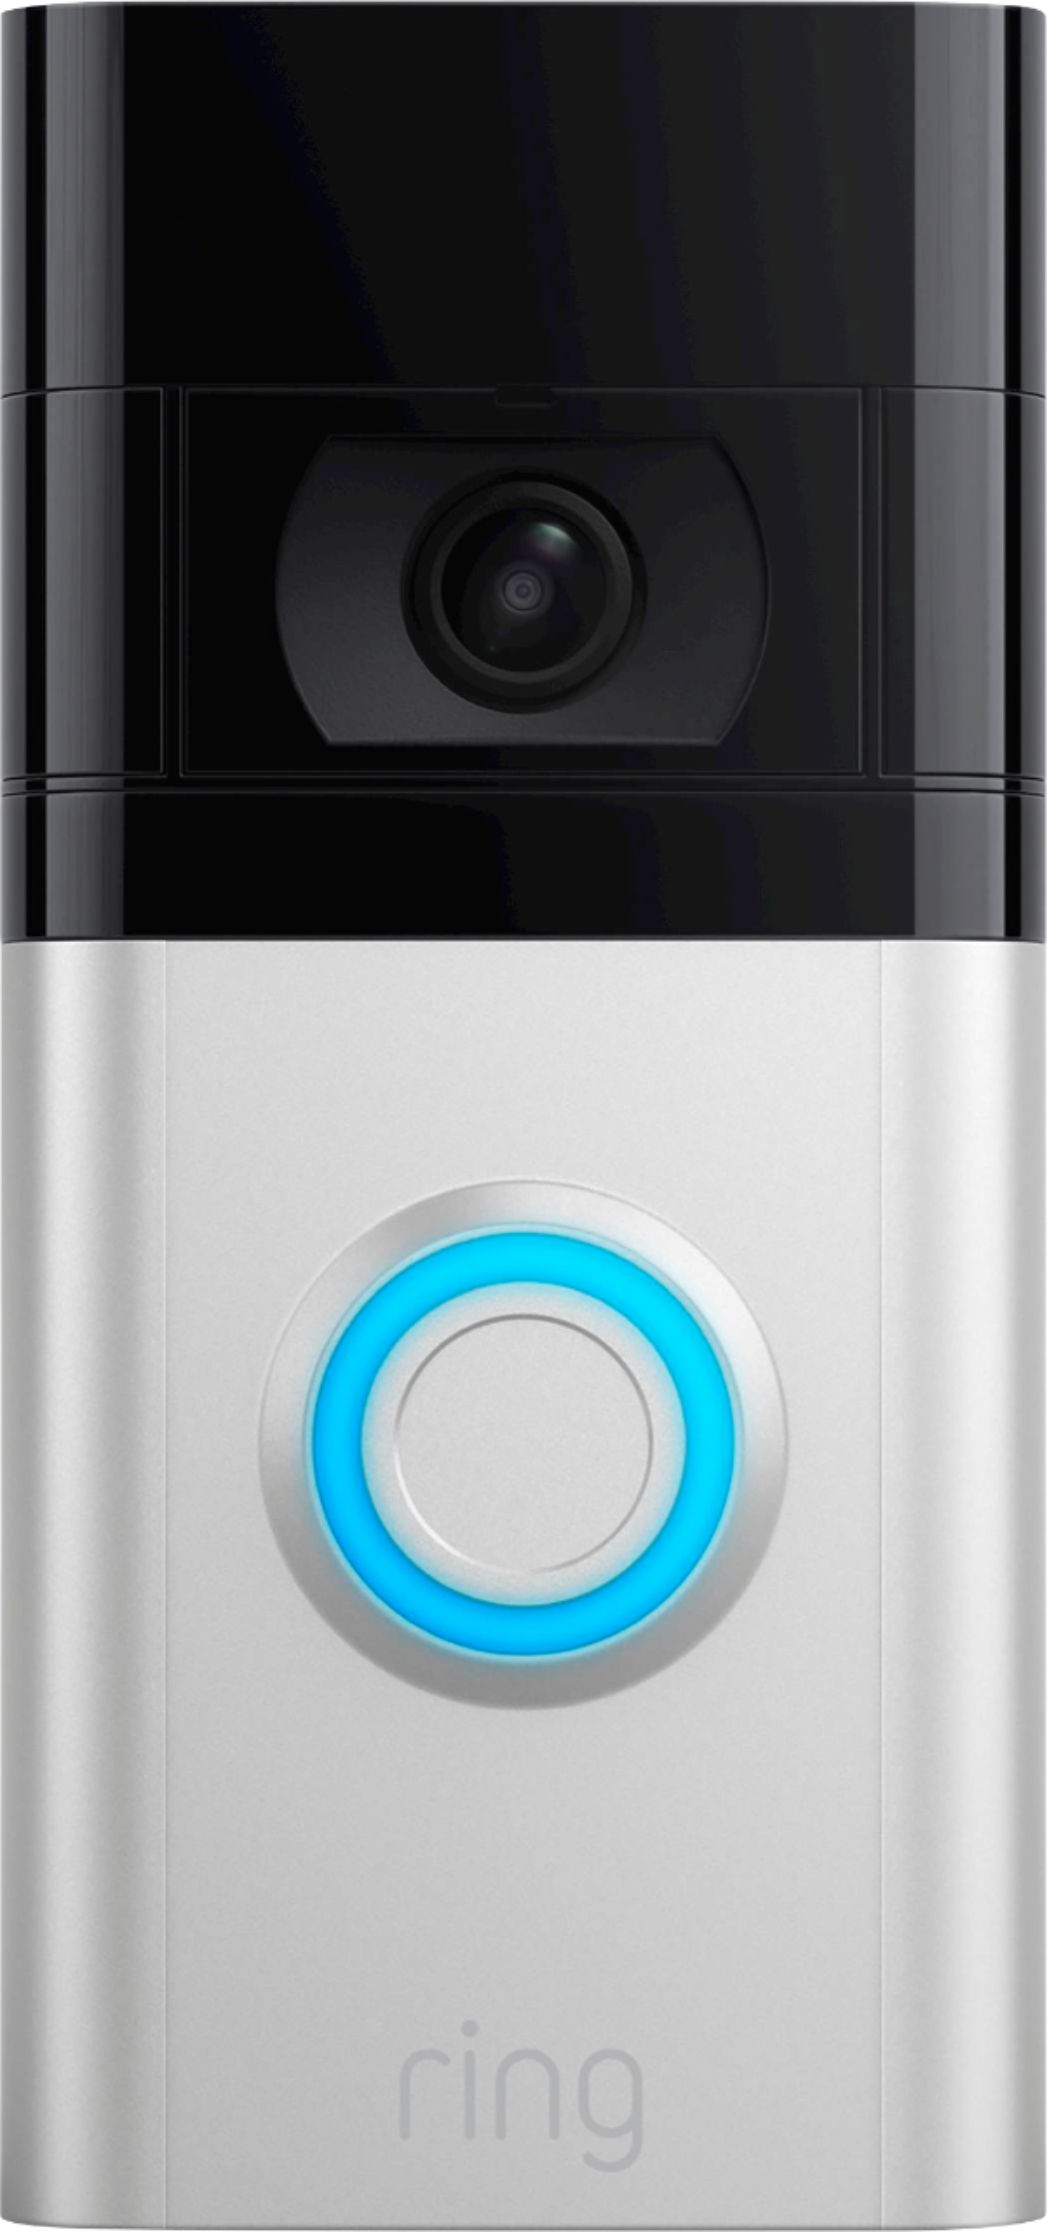 lint Veel Bijdragen Ring Video Doorbell 4 Smart Wi-Fi Video Doorbell Wired/Battery Operated  Satin Nickel B08JNR77QY - Best Buy